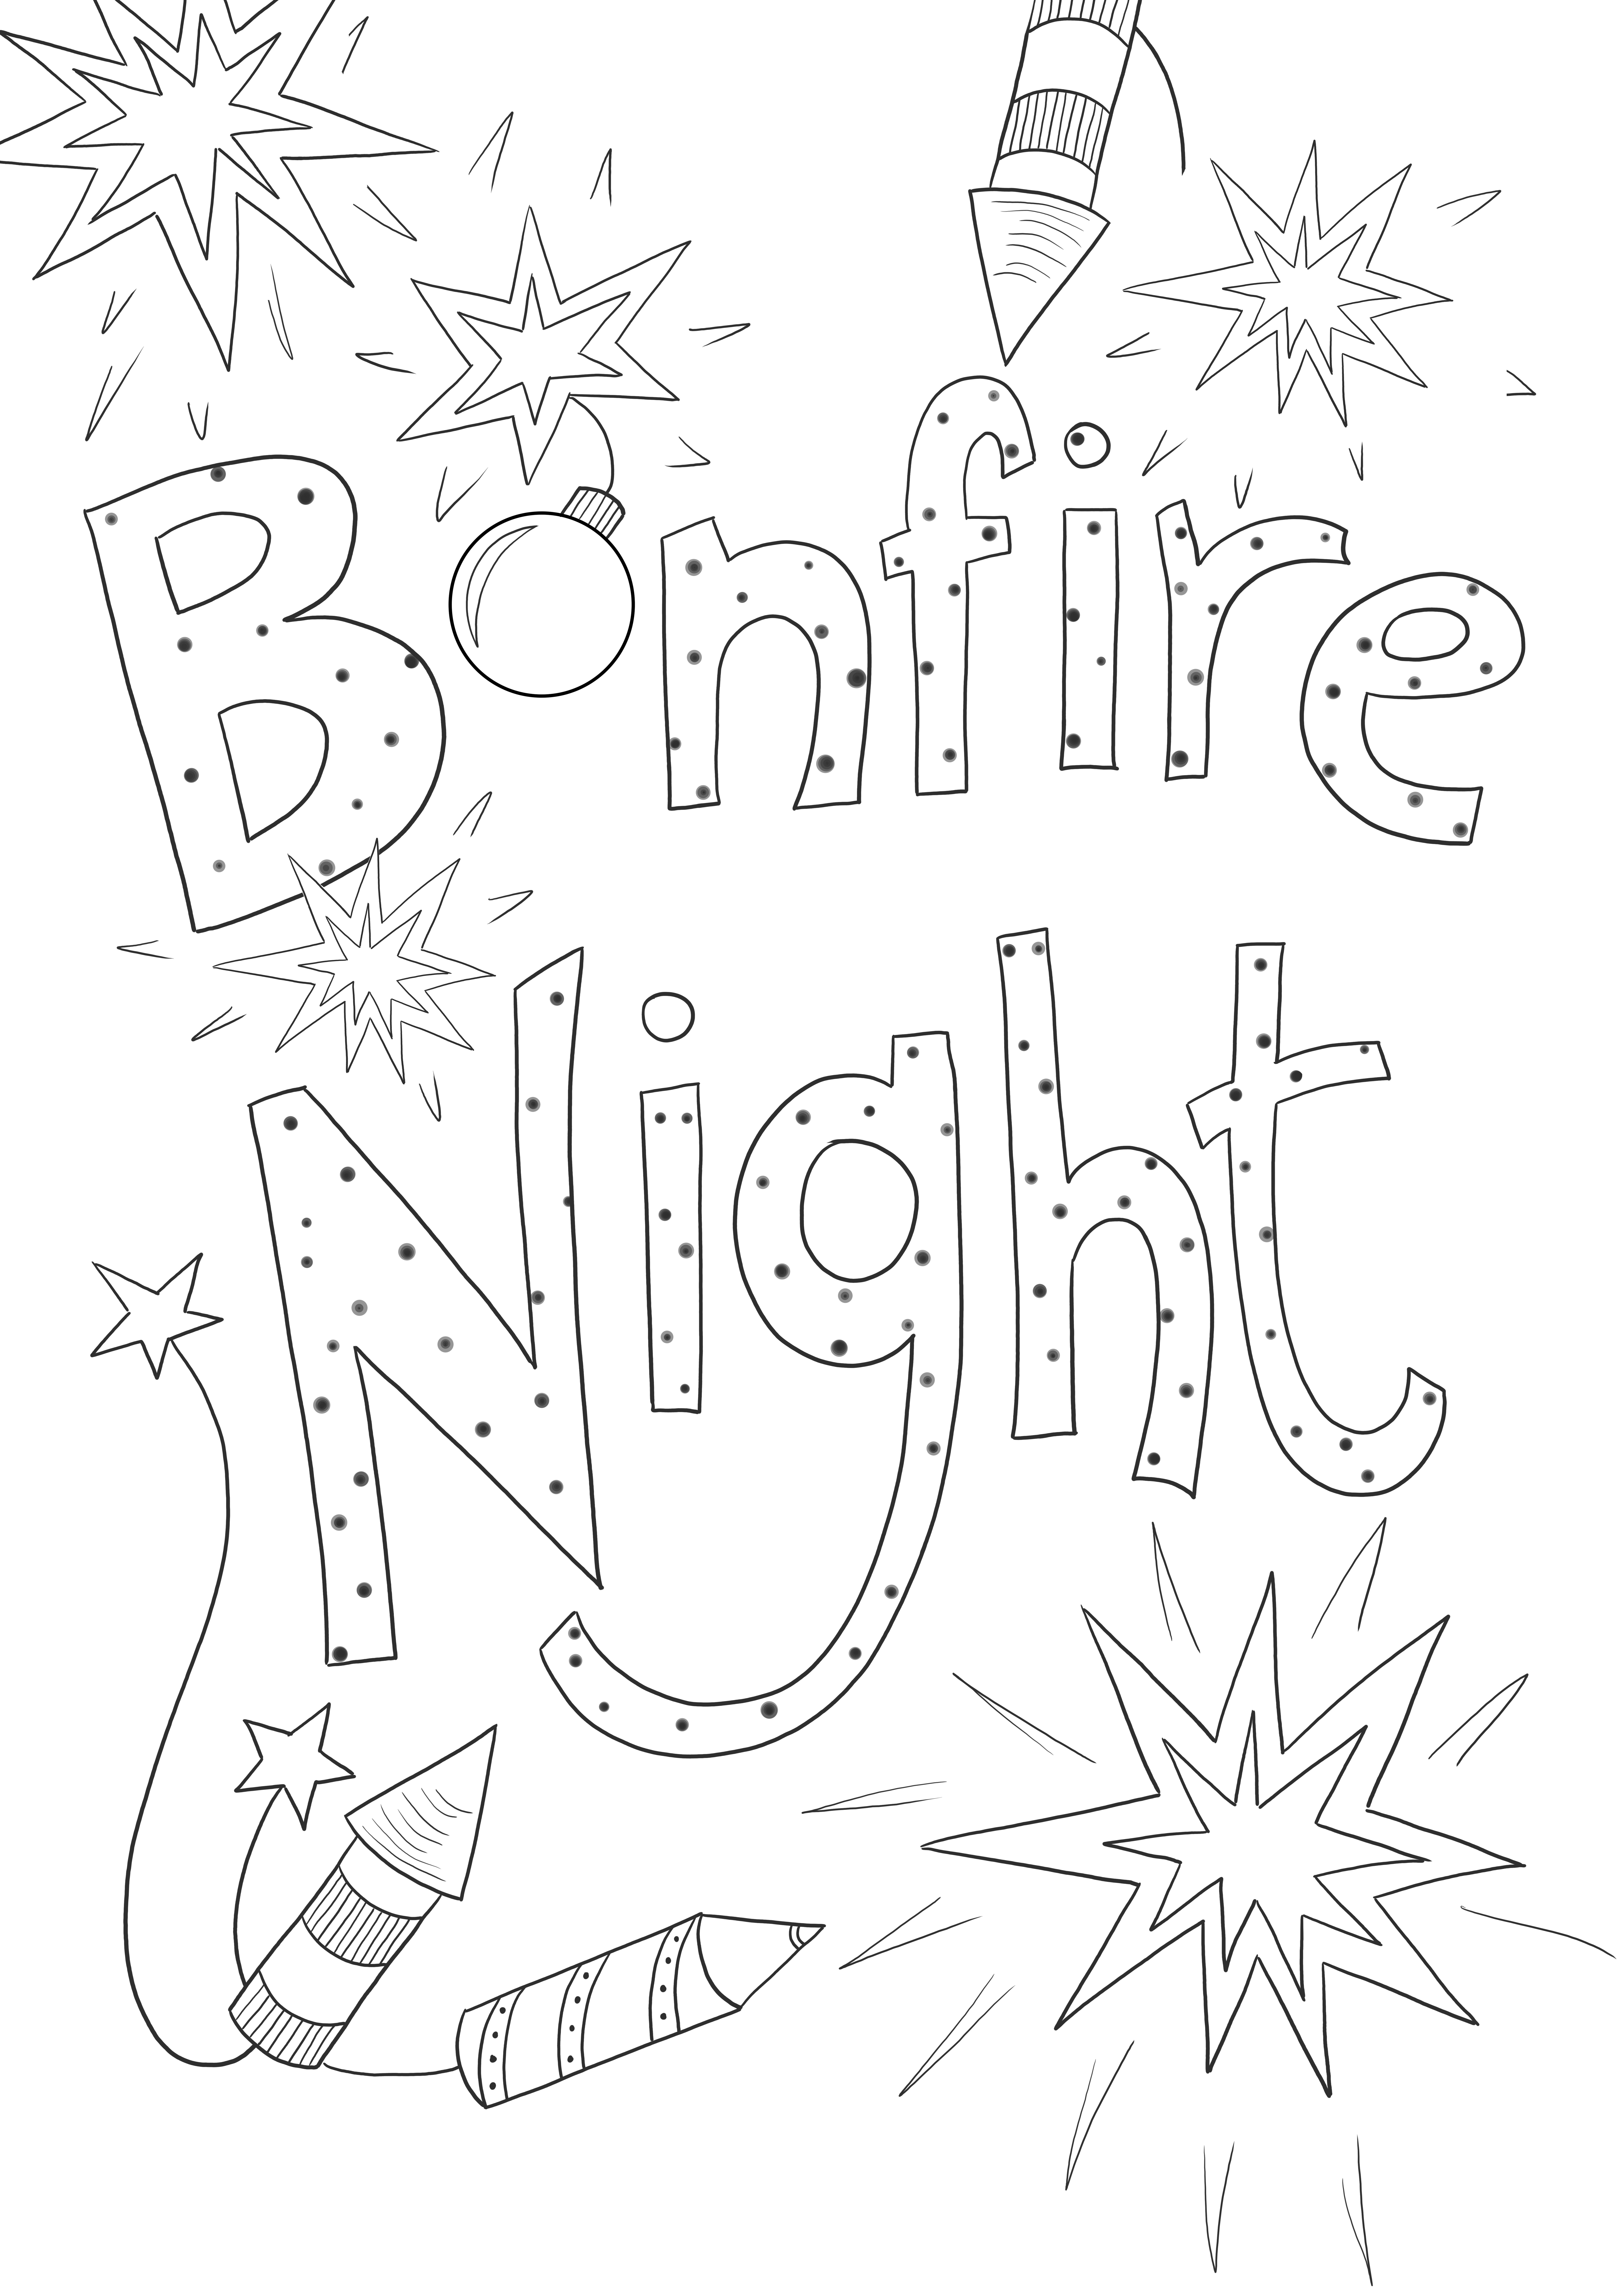 Bonfire night grátis para imprimir imagens e colorir para crianças de todas as idades